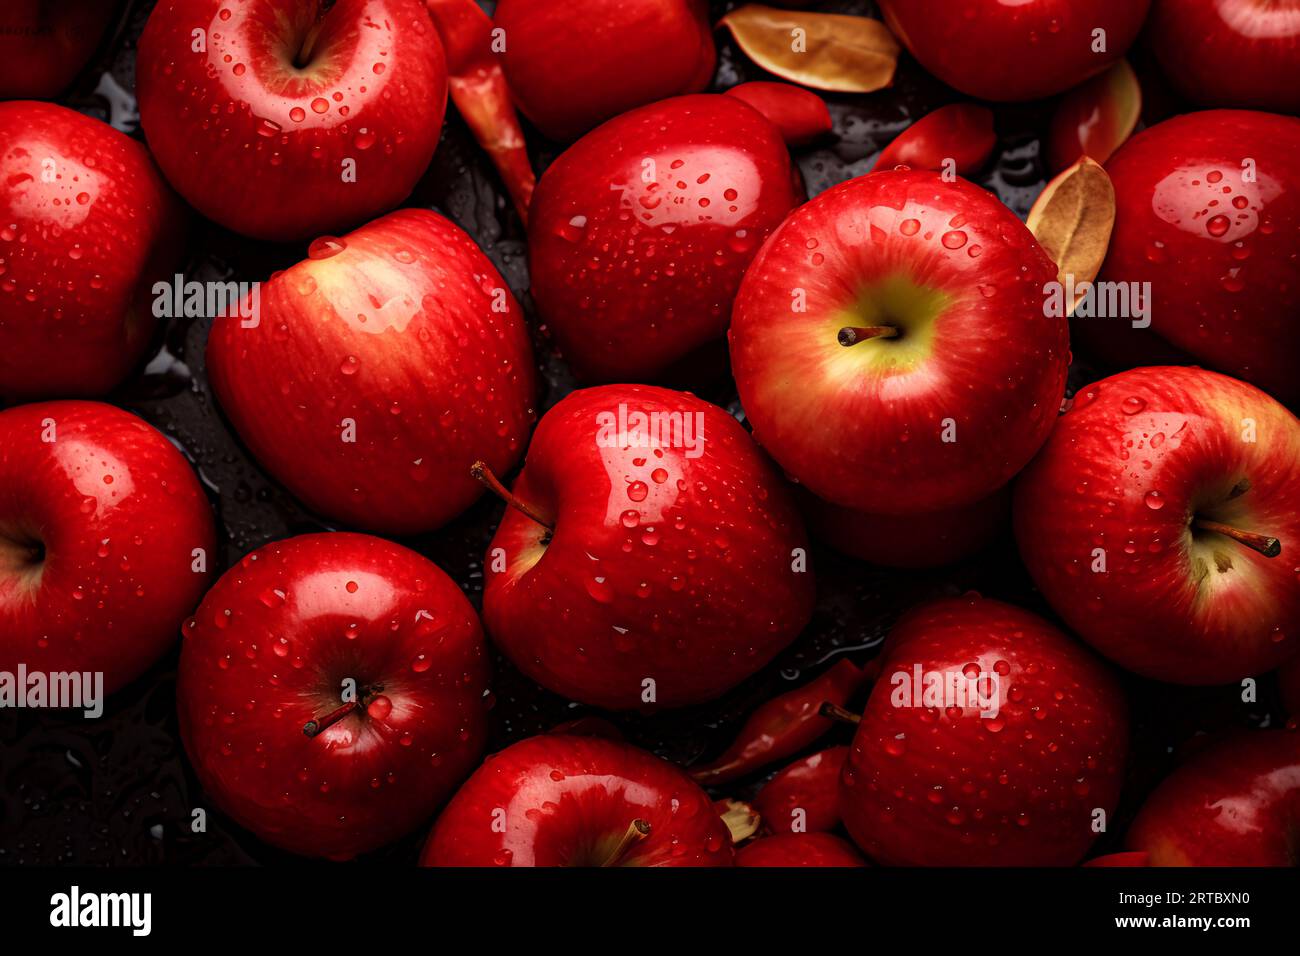 Diese Äpfel haben einen leuchtenden Rotton, ihre glatten Oberflächen sind mit zarten Wassertropfen verziert, die wie kleine Diamanten glitzern. Stockfoto